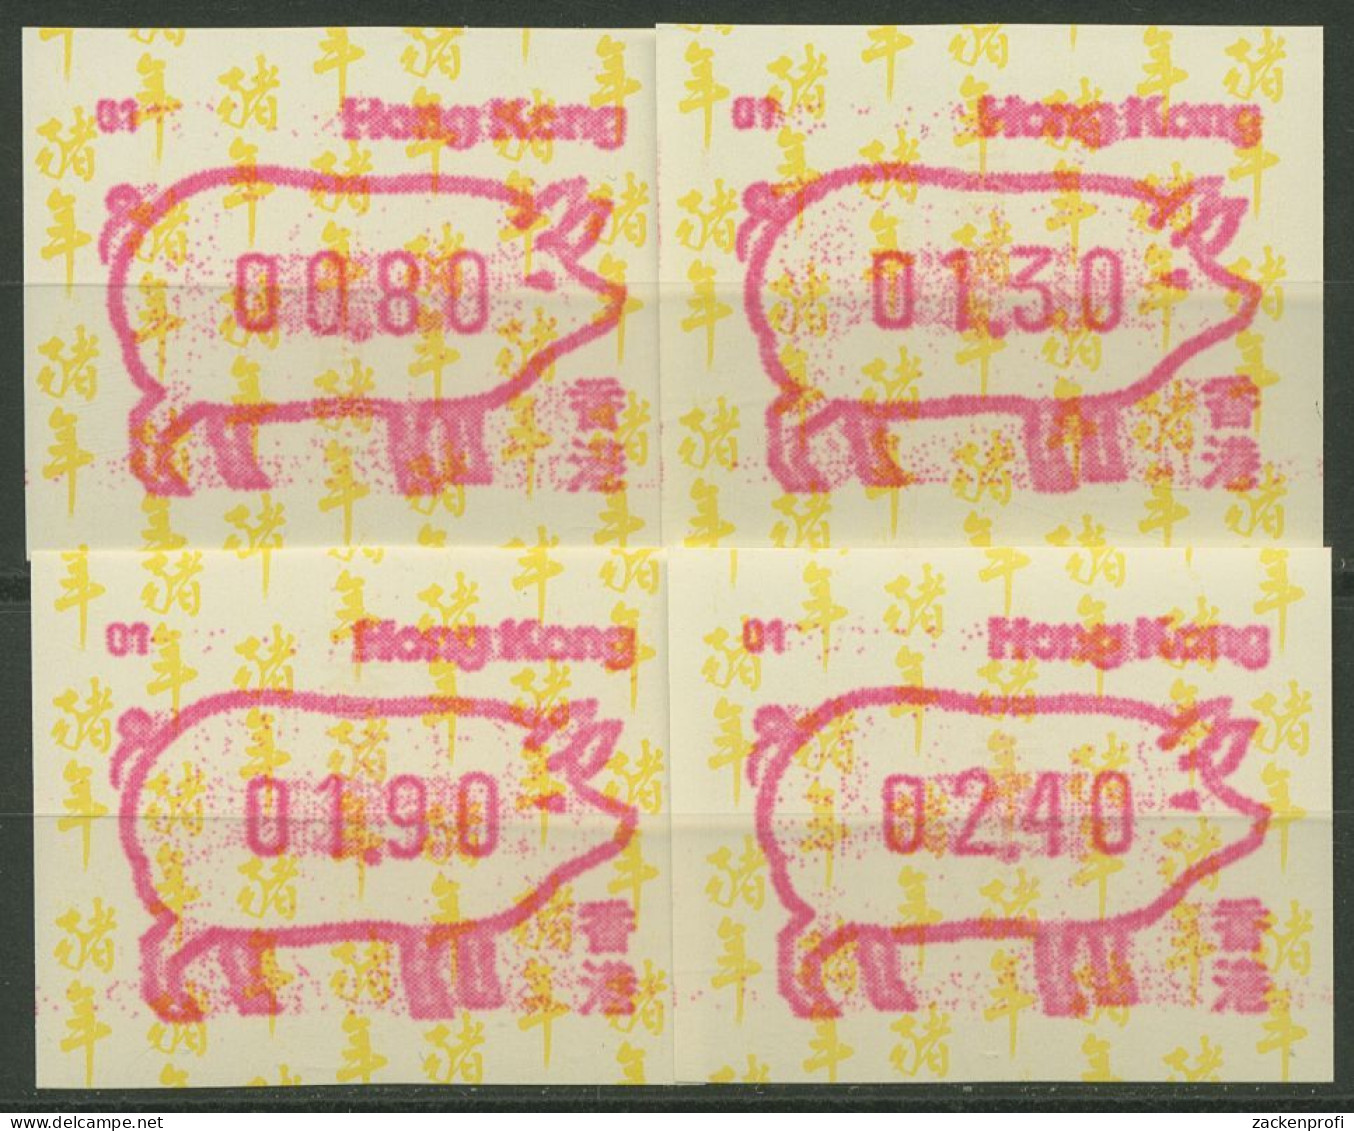 Hongkong 1995 Jahr Des Schweins Automatenmarke 10.1 S1 Automat 01 Postfrisch - Distribuidores